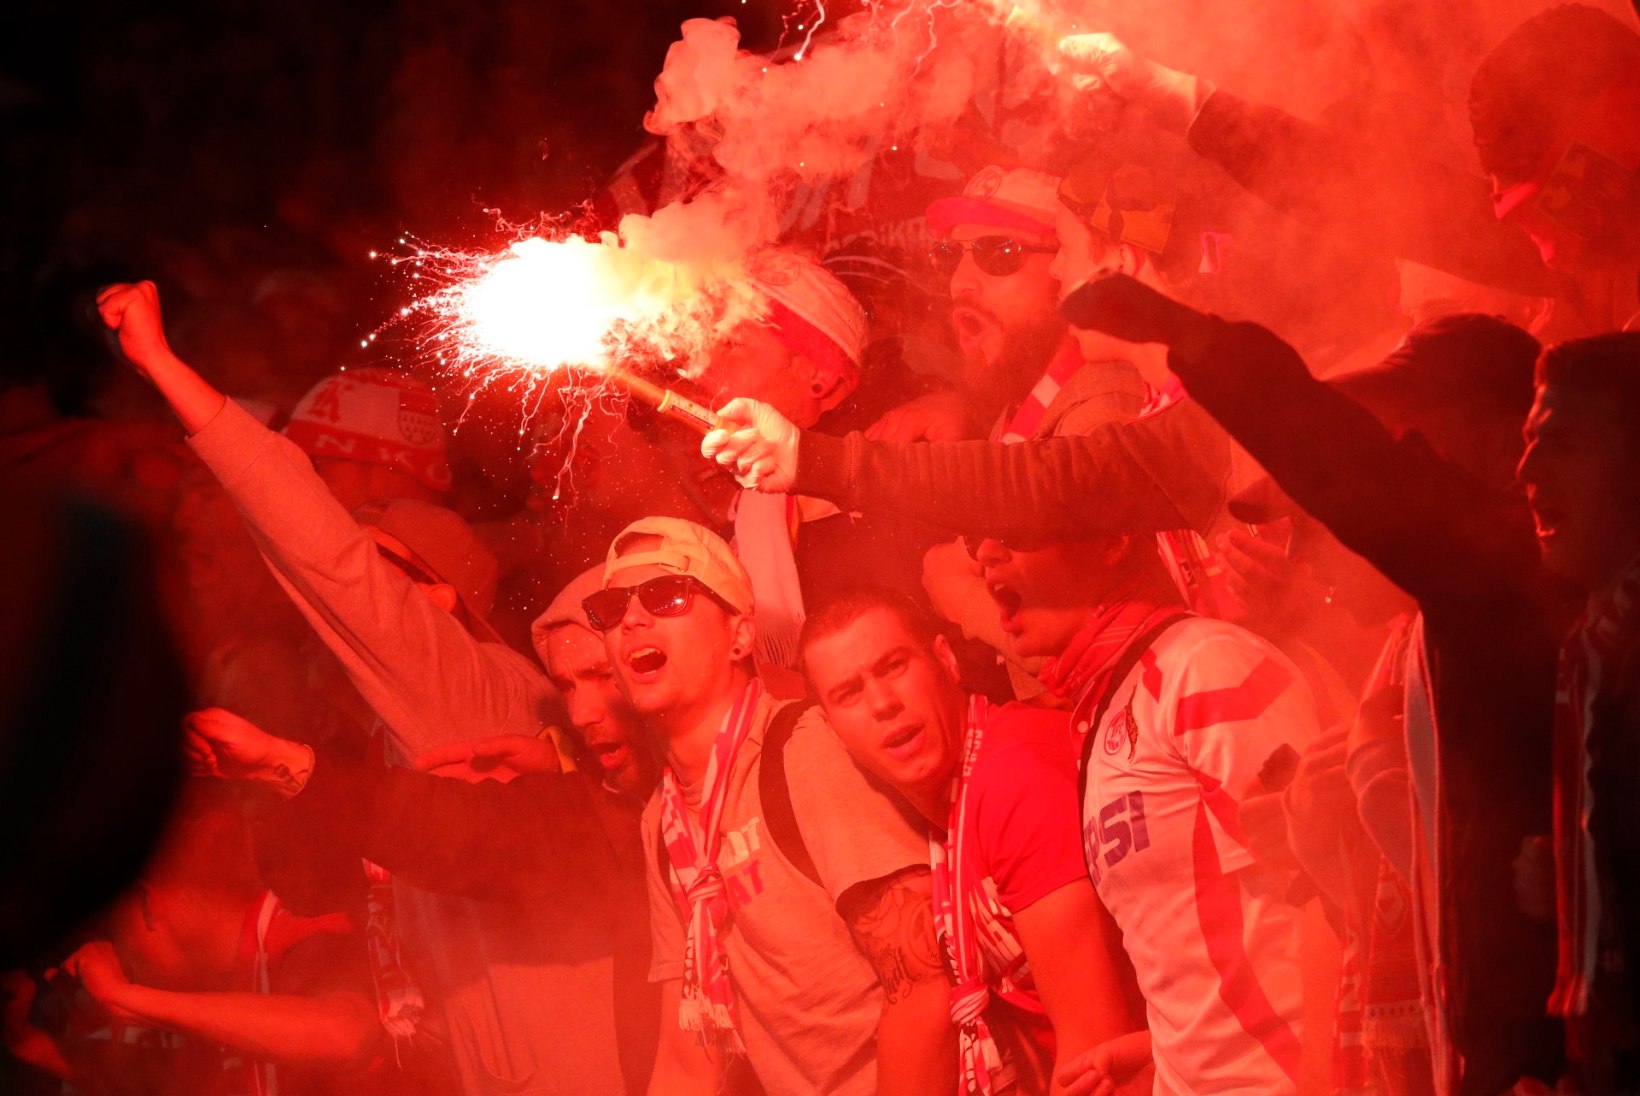 GALERII | MÄSU JA MÖLL: Kölni jalgpallifännid ajasid Arsenali toetajatele hirmu naha vahele